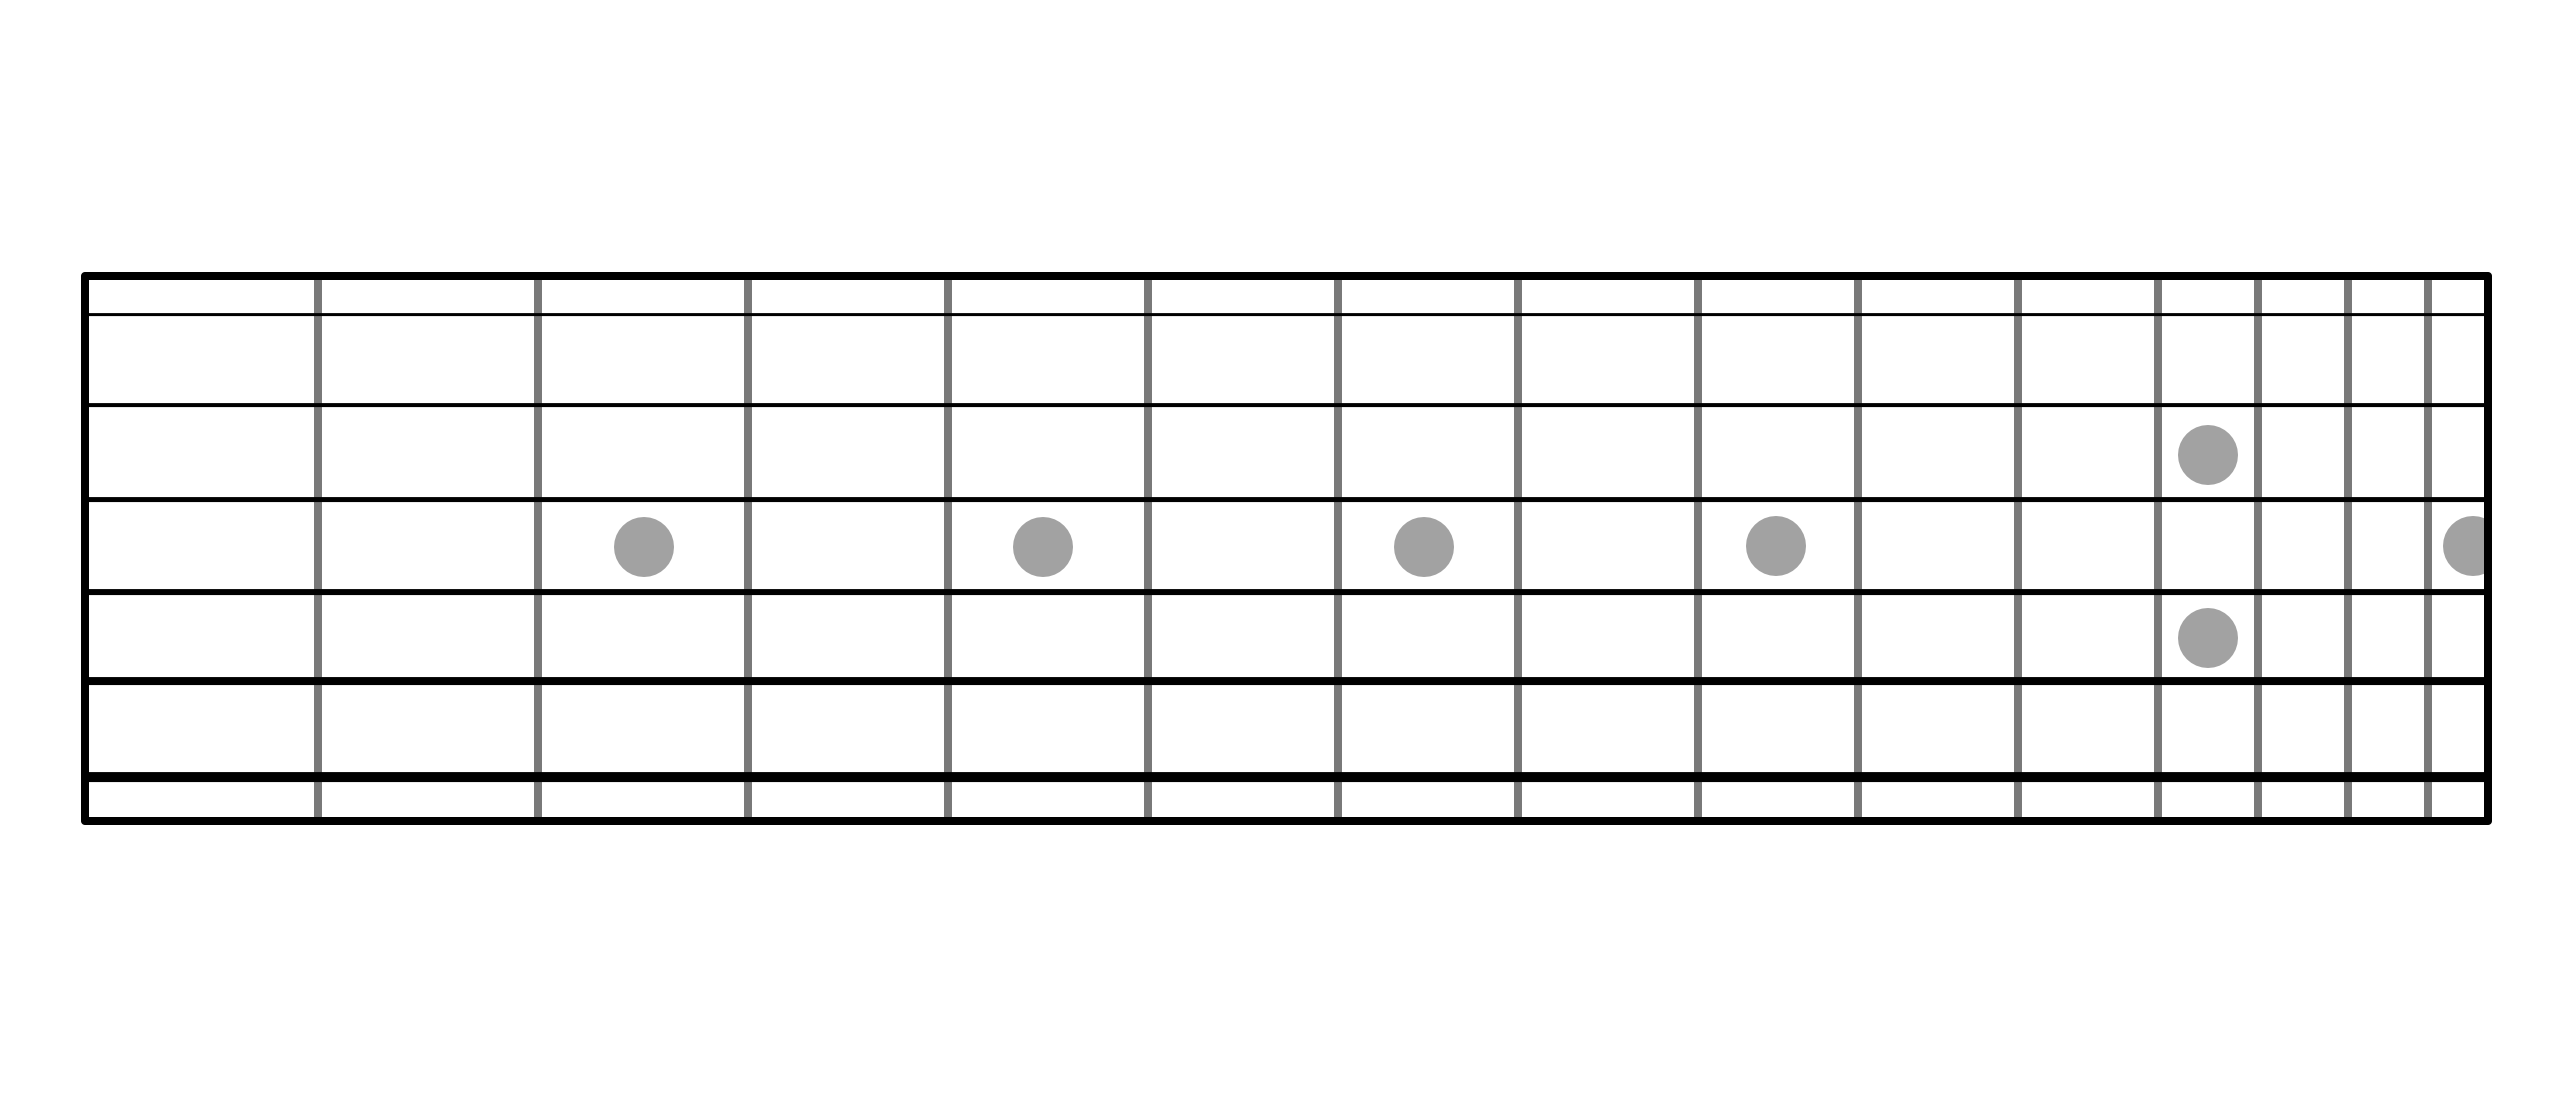 Geeky guitar fretboard diagram printable Roy Blog